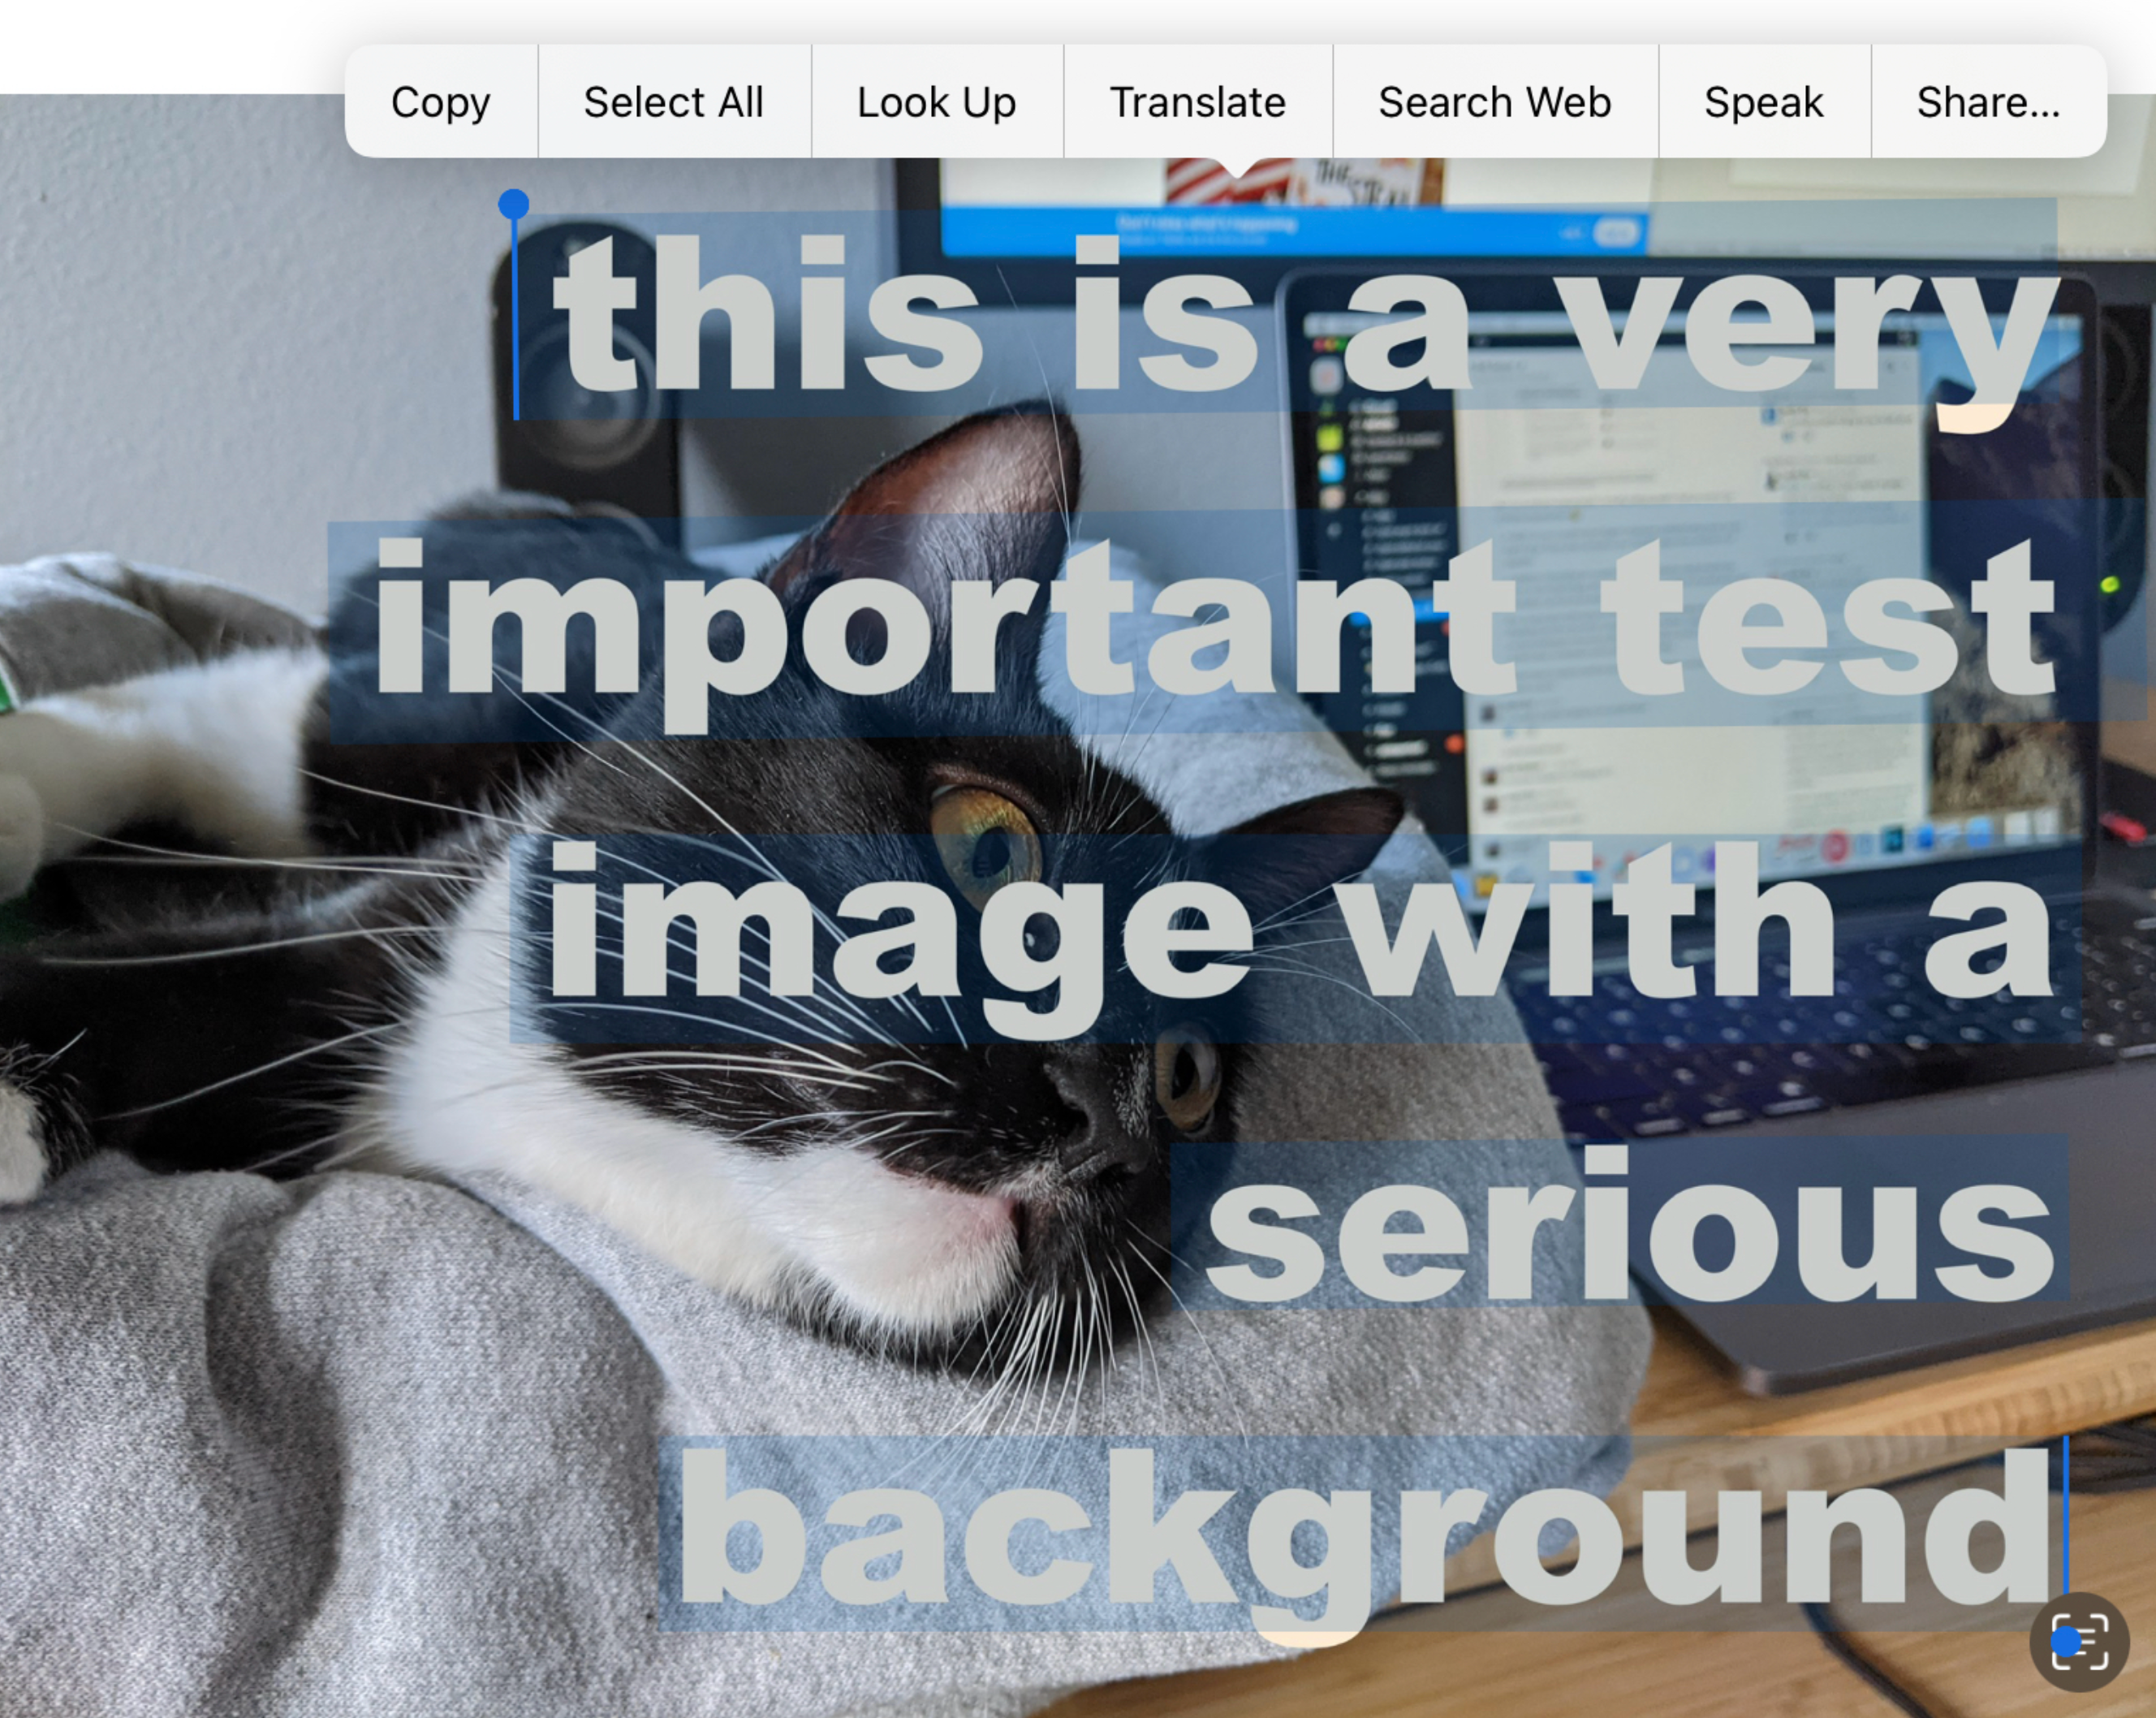 Снимок экрана с изображением кота, открытым на iOS, с наложенным и выделенным текстом.